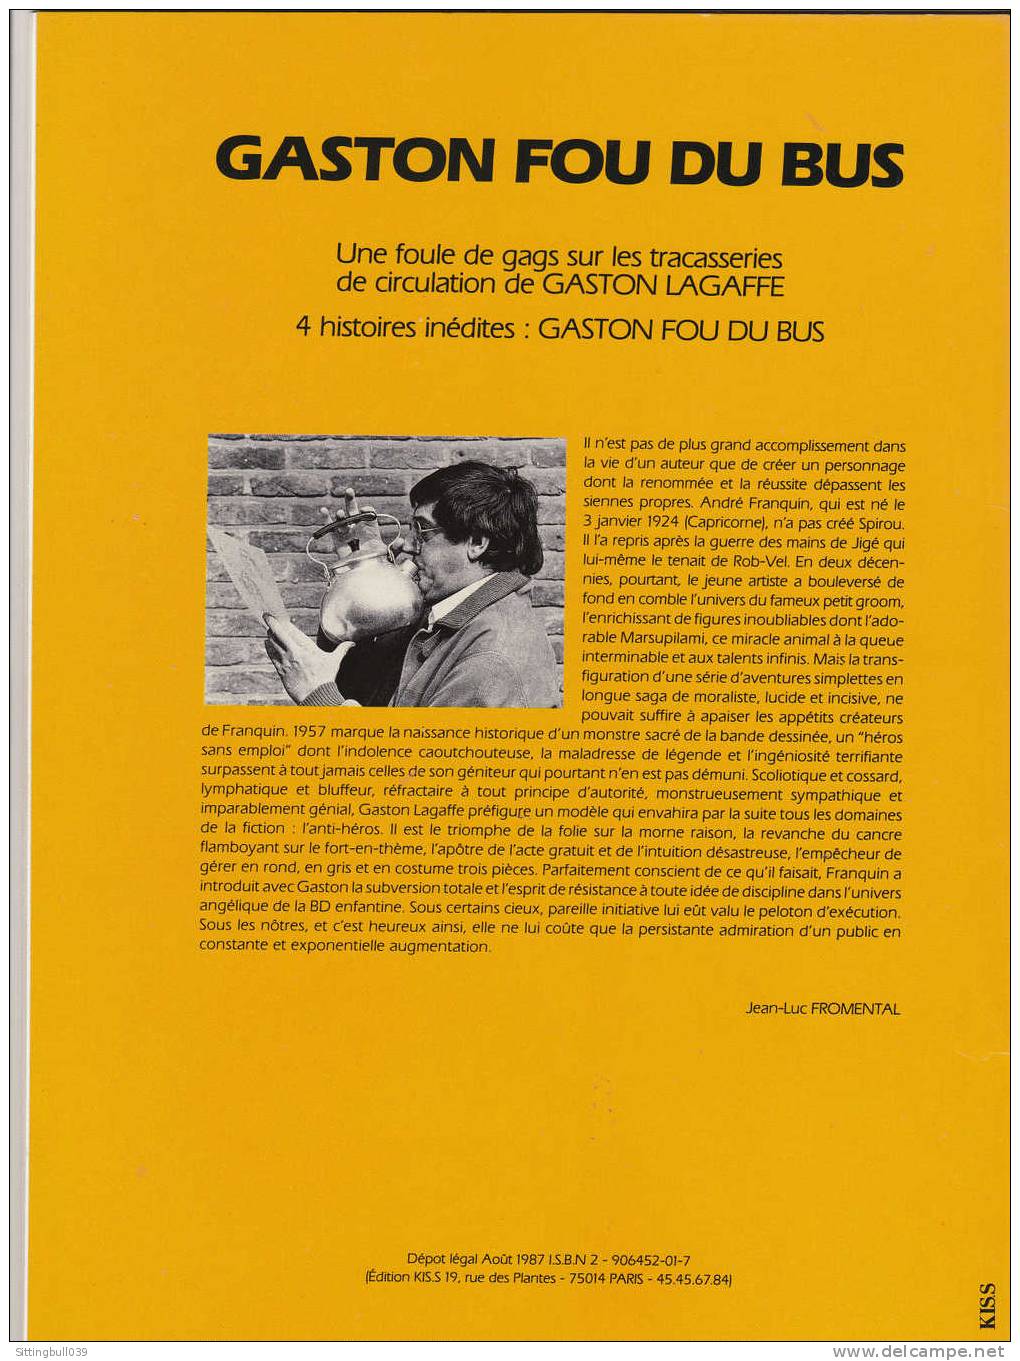 FRANQUIN. GASTON FOU DU BUS. EO 1987. Album Pub. Pour Les Transports Publics. 4 Histoires Inédites. Ed KIS.S. Logo RATP. - Advertisement